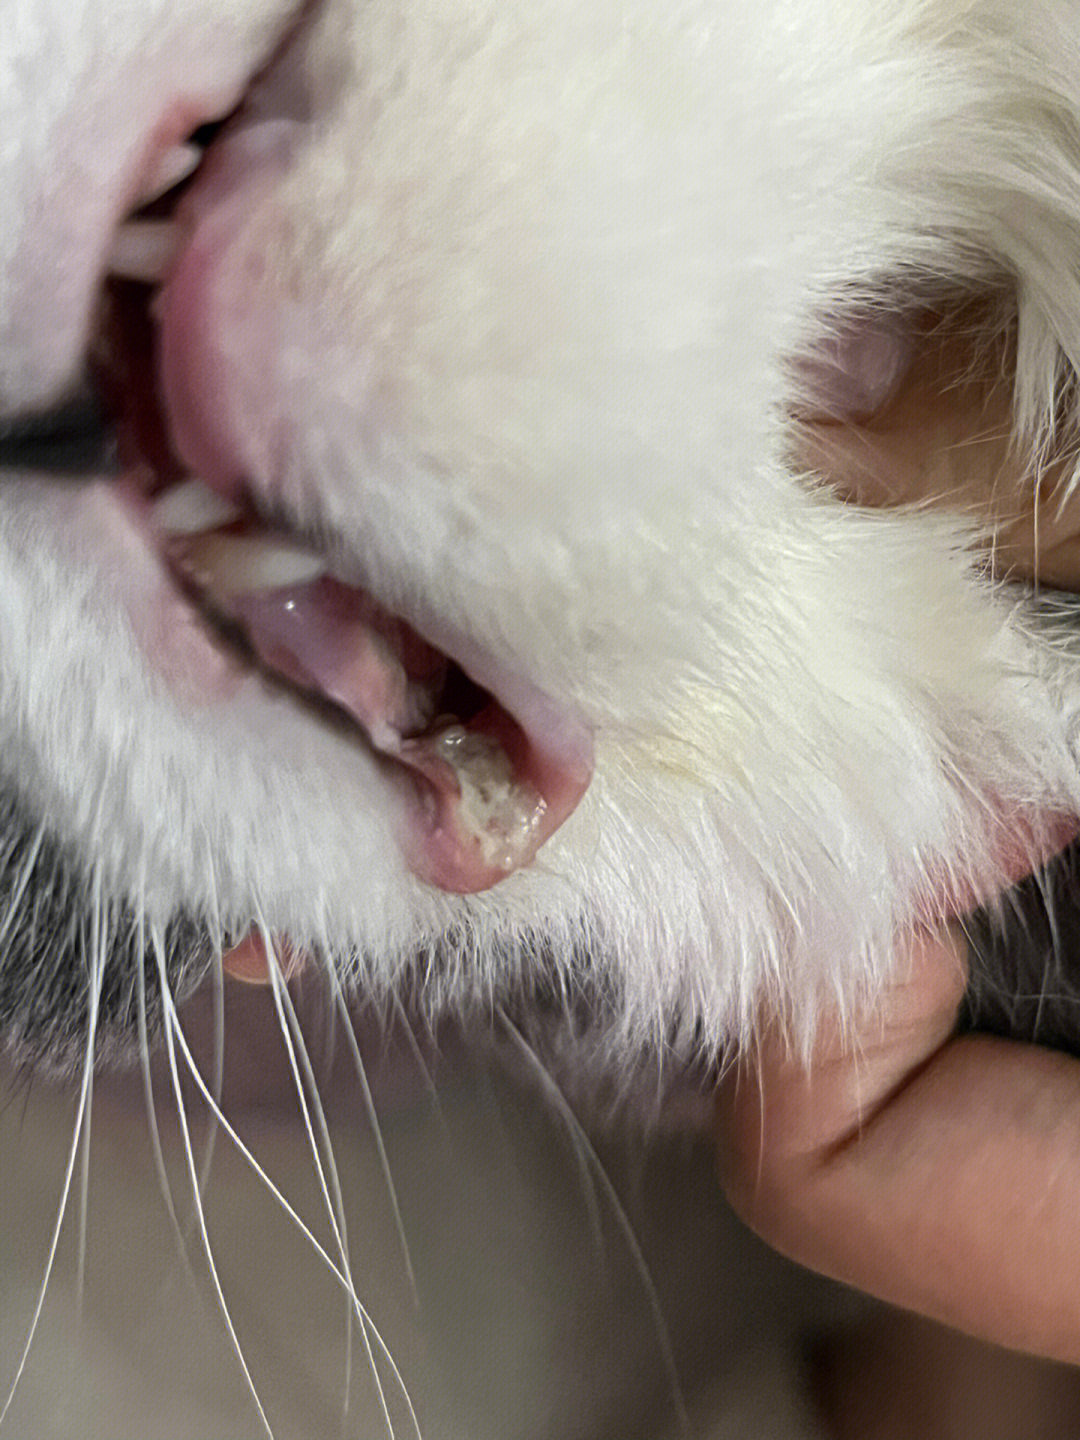 猫口角炎症状图片图片